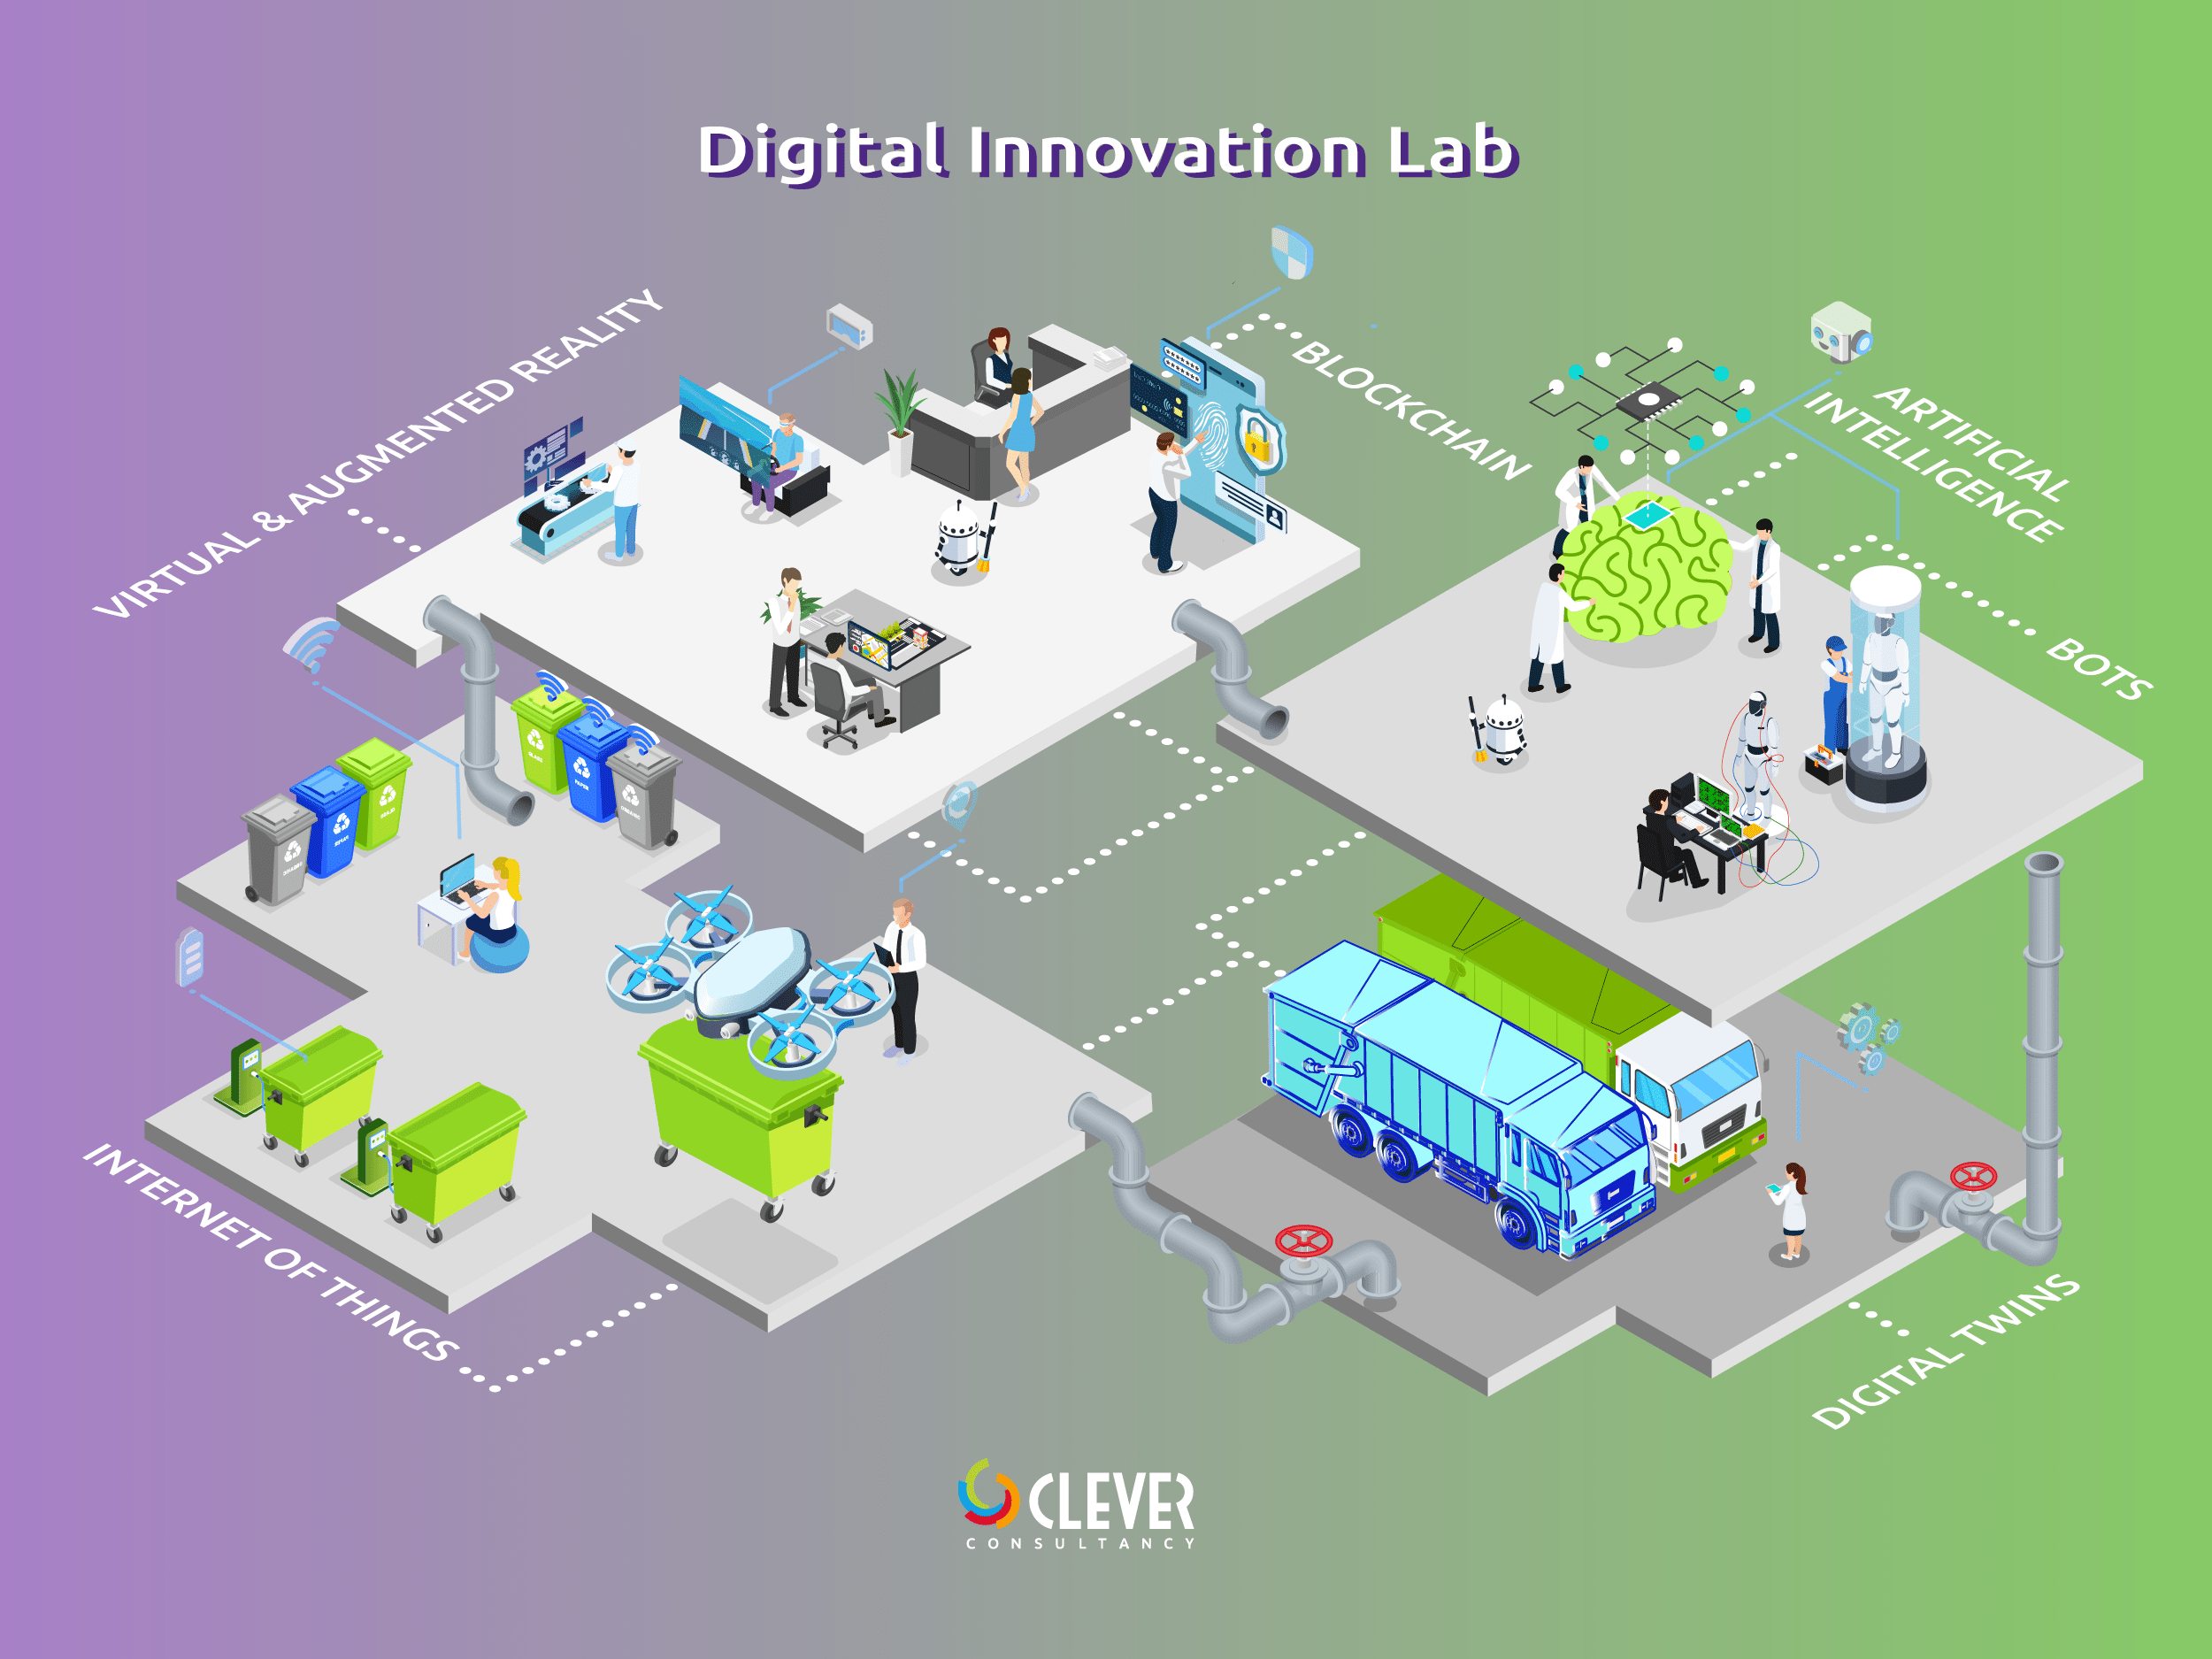 Digital Innovation Lab van Clever Consultancy voor innovatie en digitalisatie van de afvalsector en recyclingindustrie